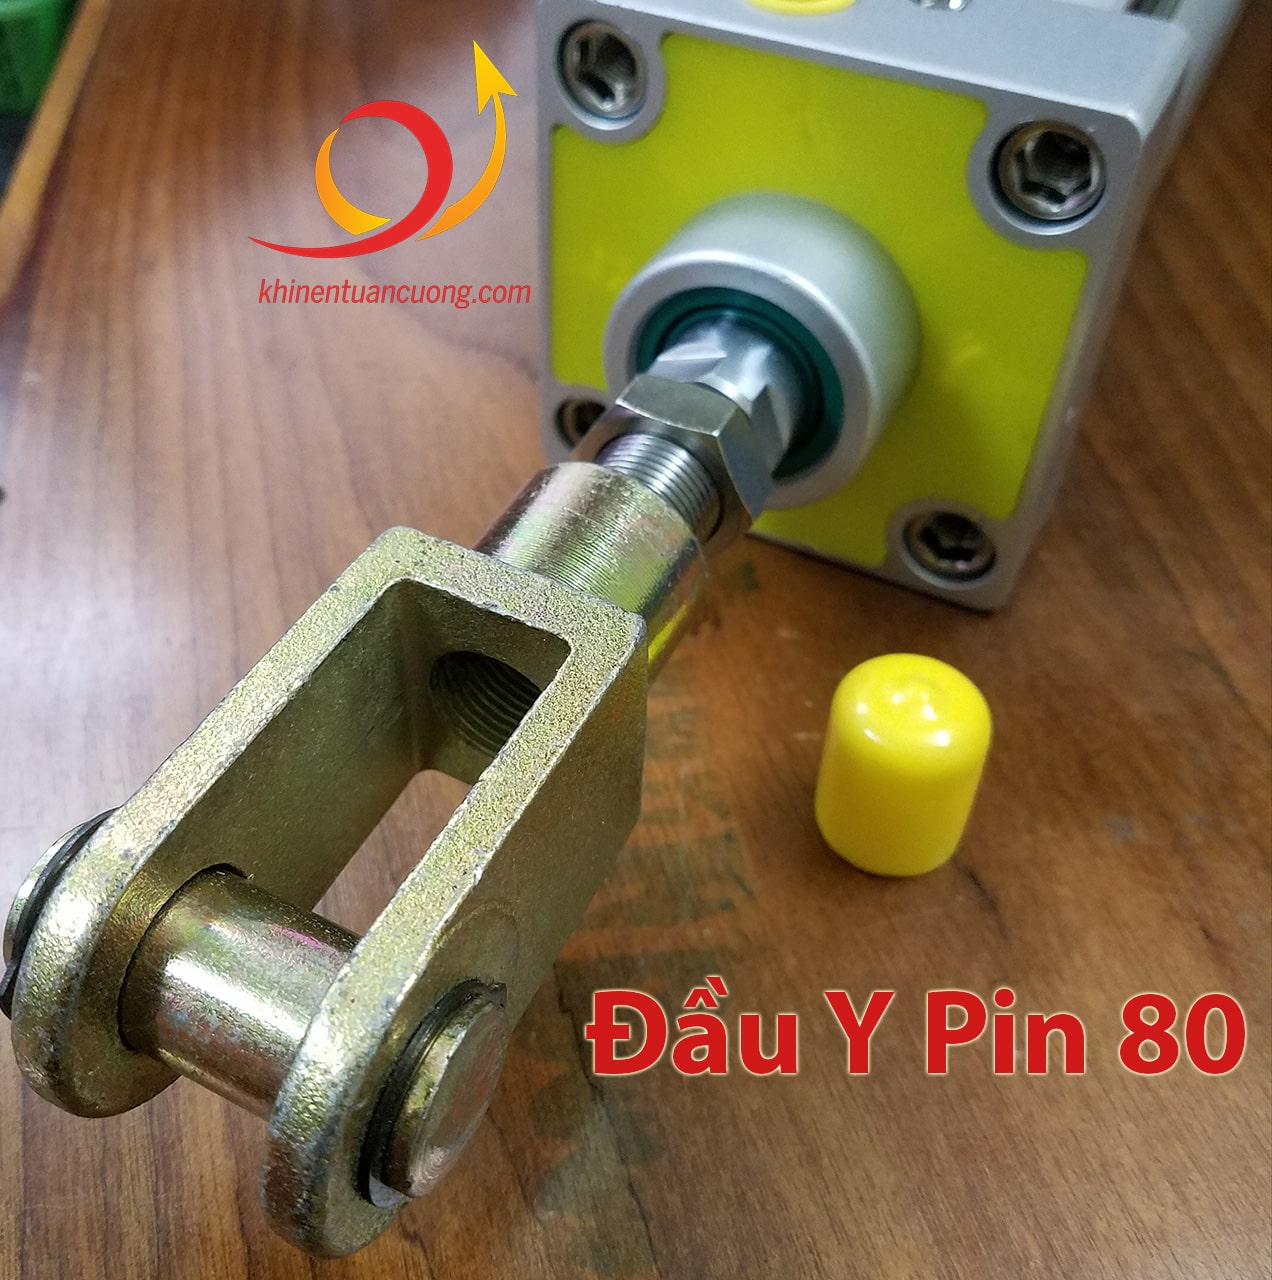 Đầu Y Pin 80 lắp trên xi lanh chất lượng TGC80x350-S STNC có từ